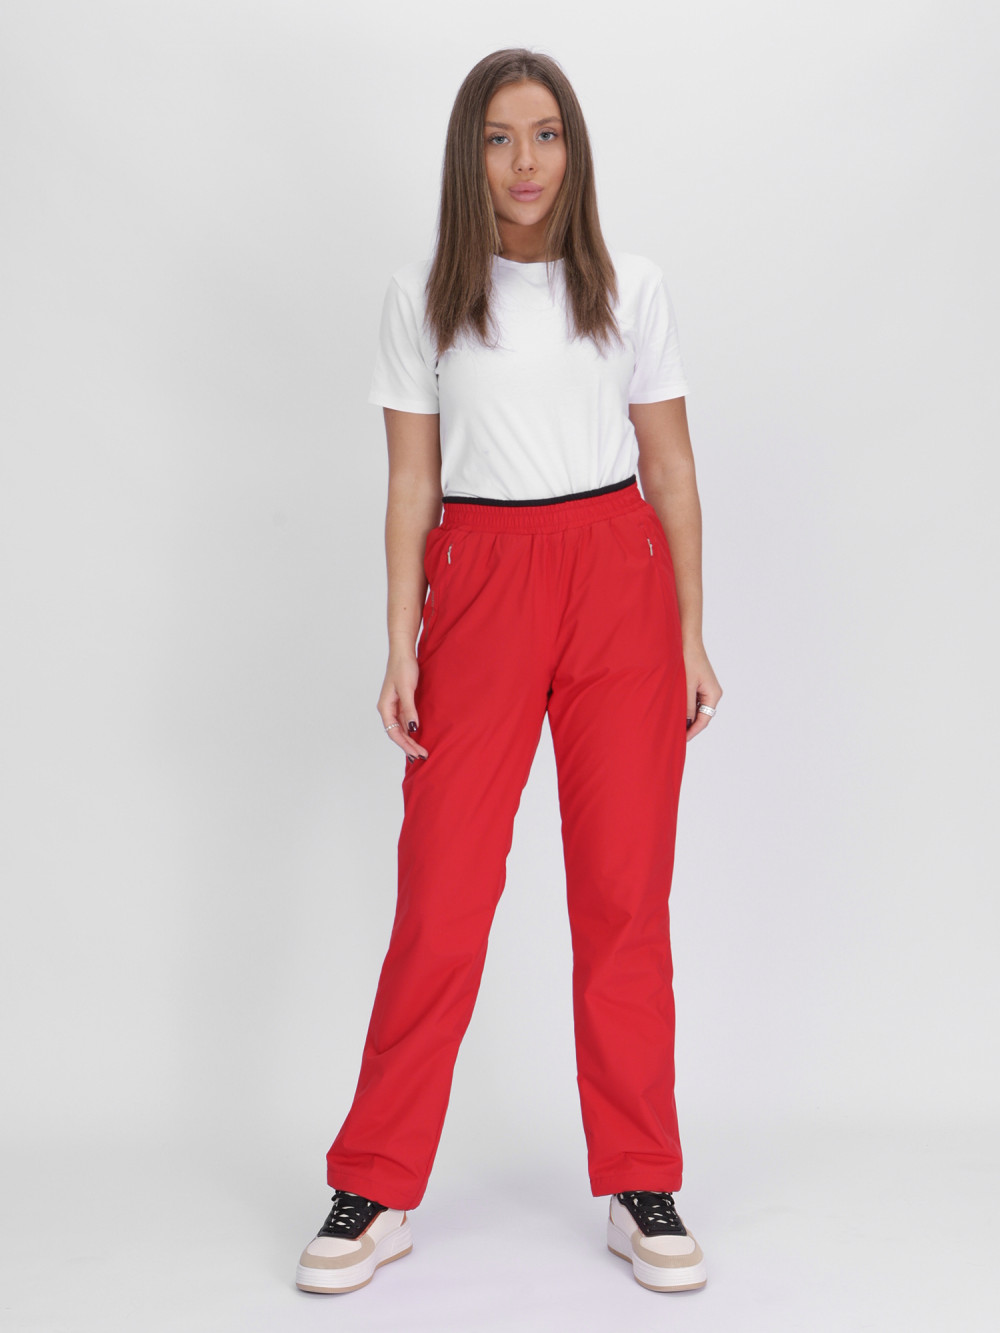 Купить оптом Утепленные спортивные брюки женские красного цвета 88149Kr в Екатеринбурге